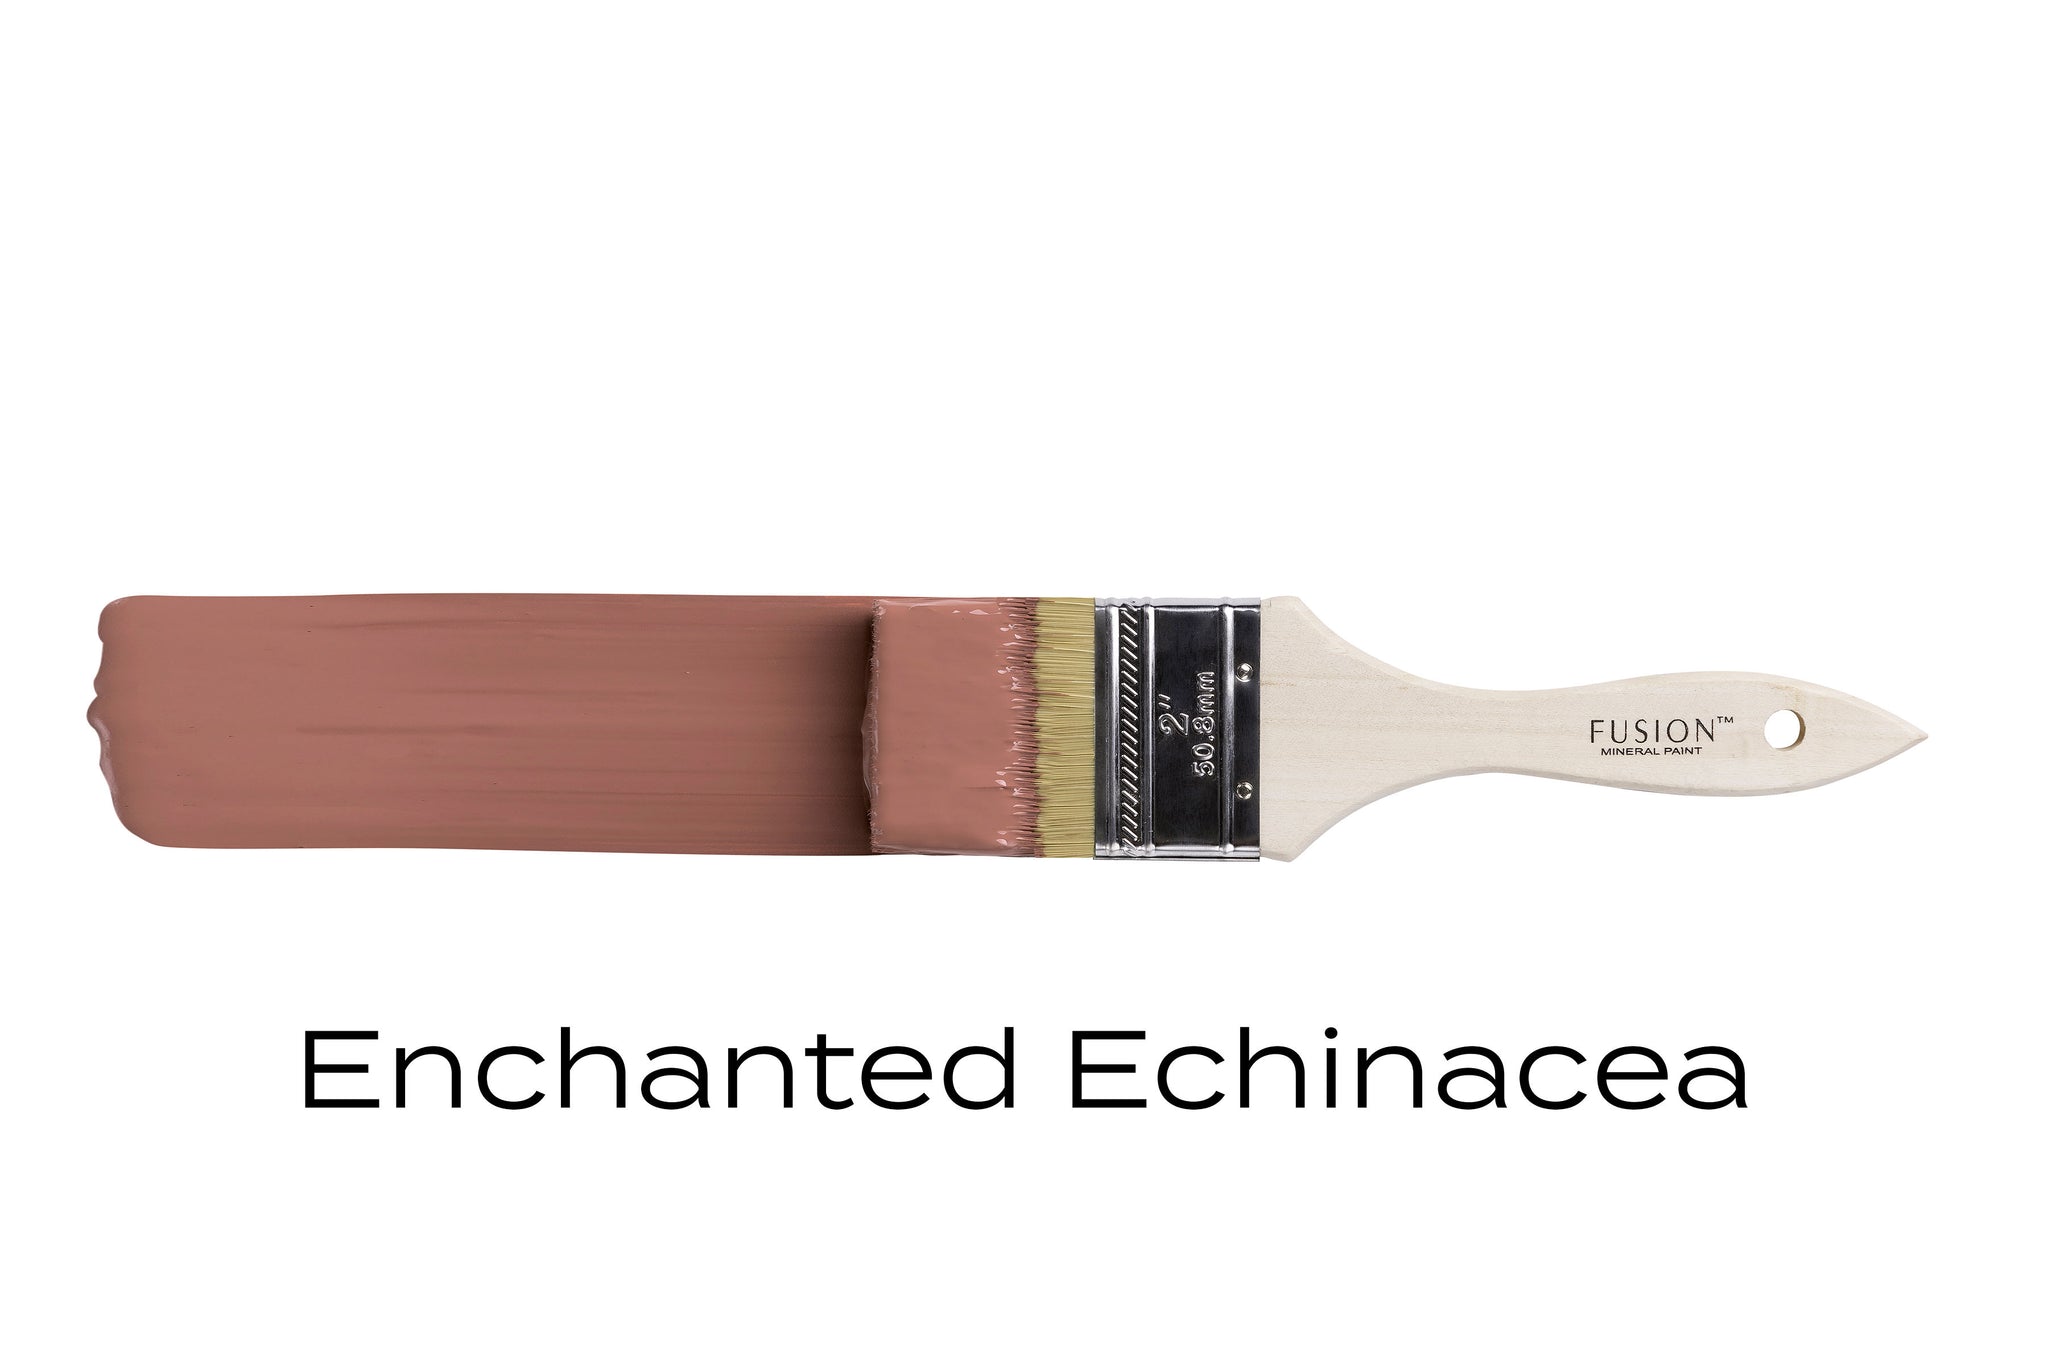 Enchanted Echinacea